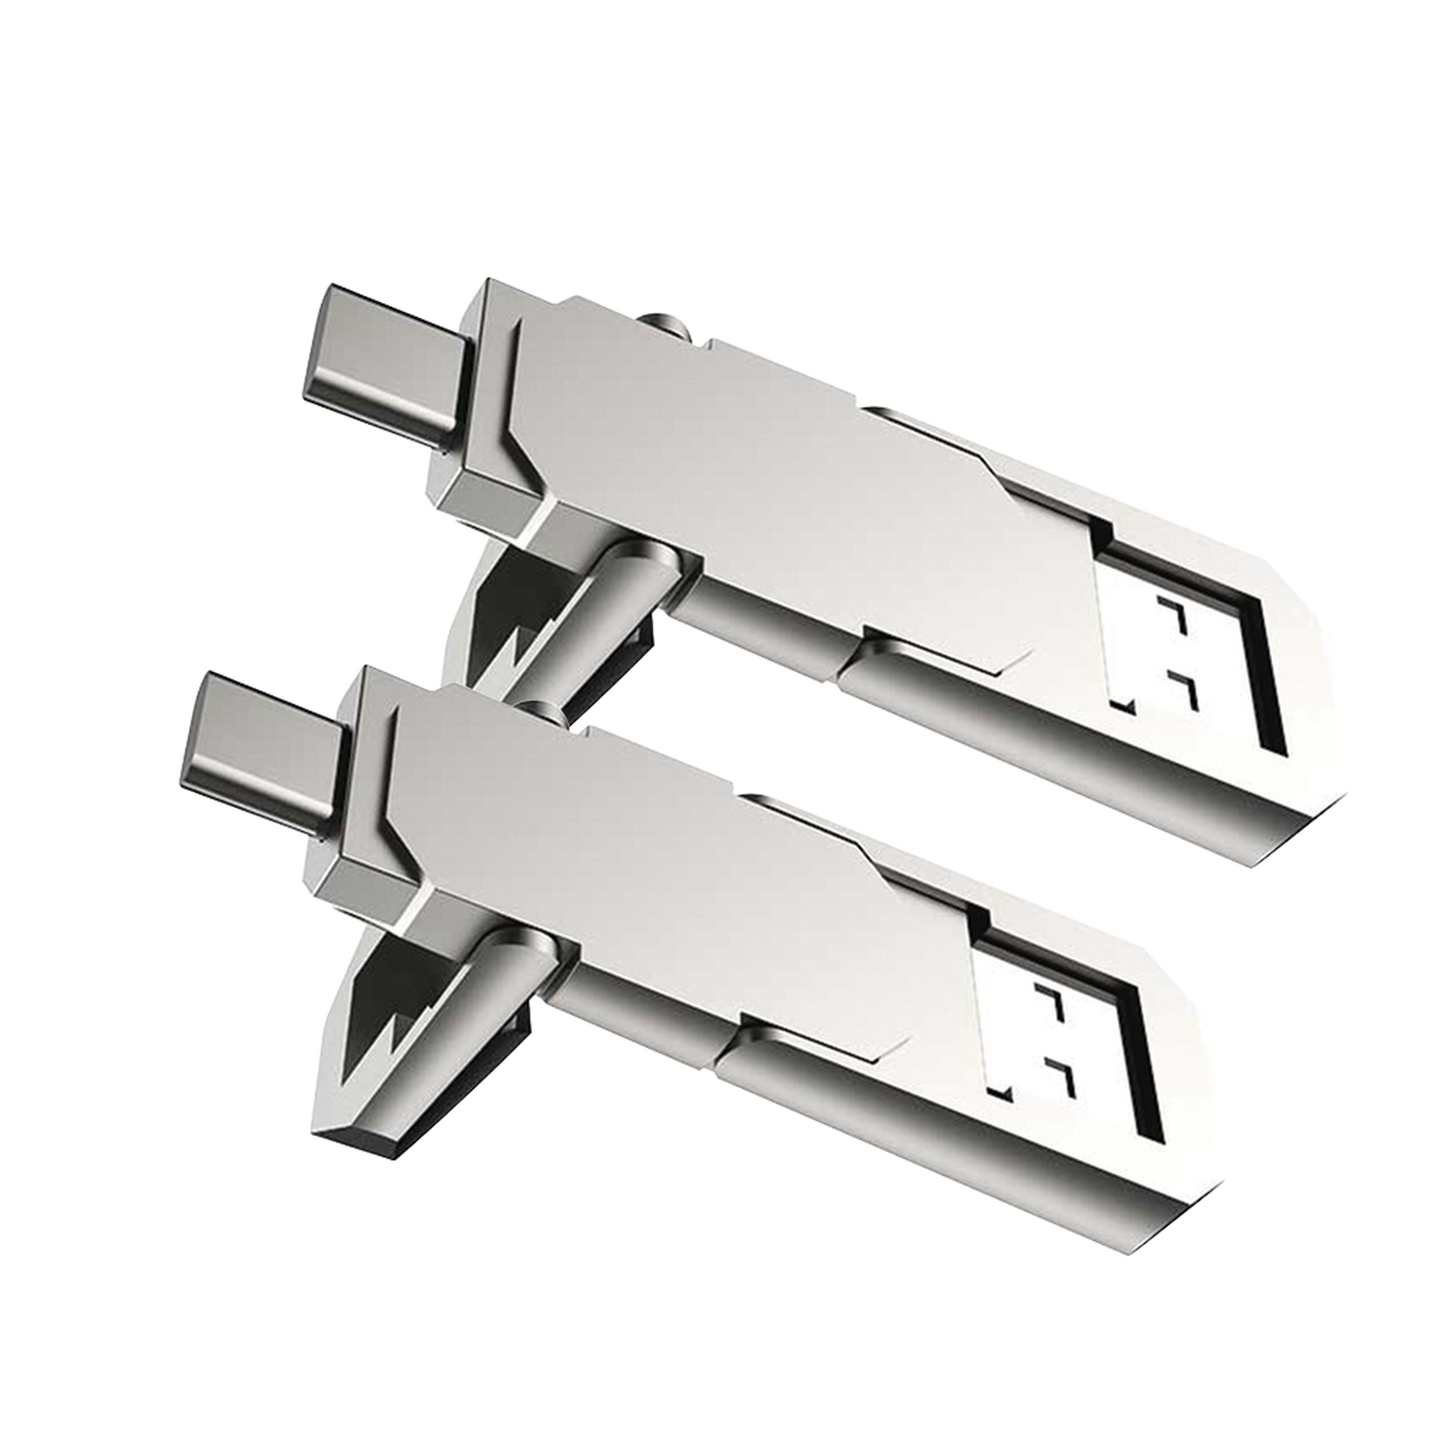 Kit de 2 Memorias USB Dual de 128GB / USB-C y USB-A / Transferencia de Alta Velocidad / Metálica / Compatible con Dispositivos Móviles, Windows, Mac y Linux